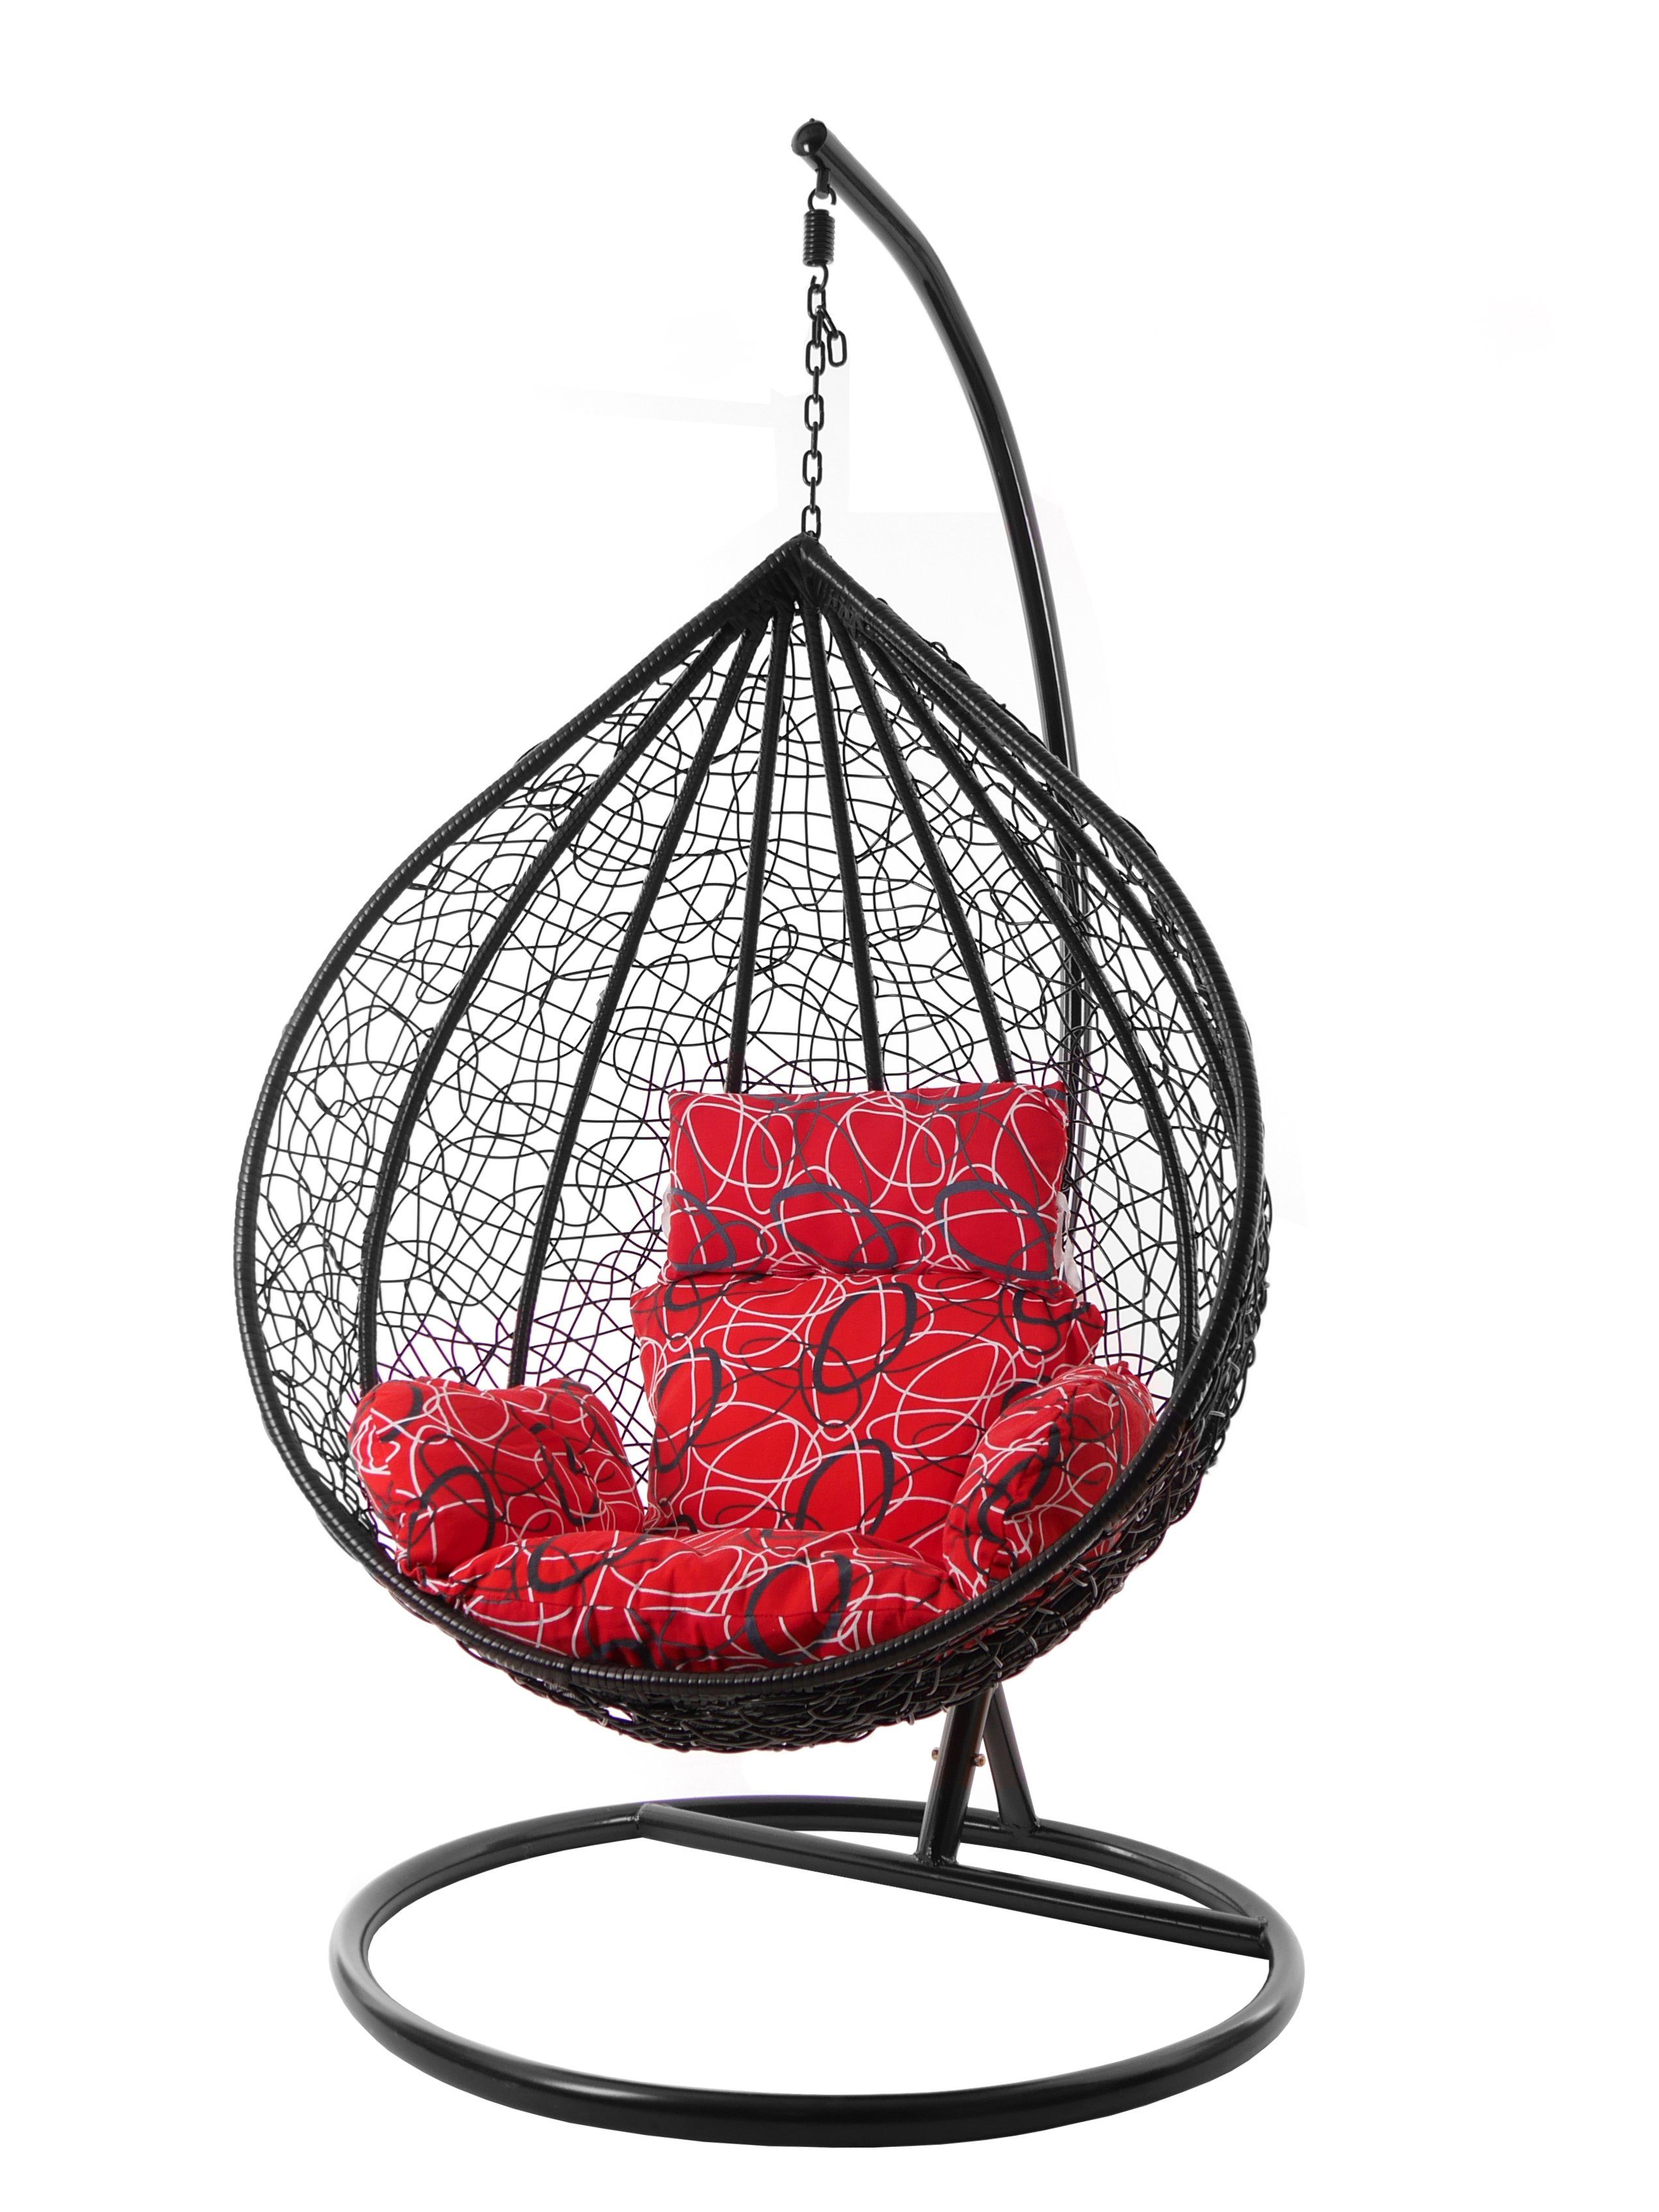 KIDEO Hängesessel Hängesessel red Chair, (3088 Hängesessel und rot Kissen, Nest-Kissen mit schwarz, frizzy) gemustert Swing MANACOR XXL Gestell